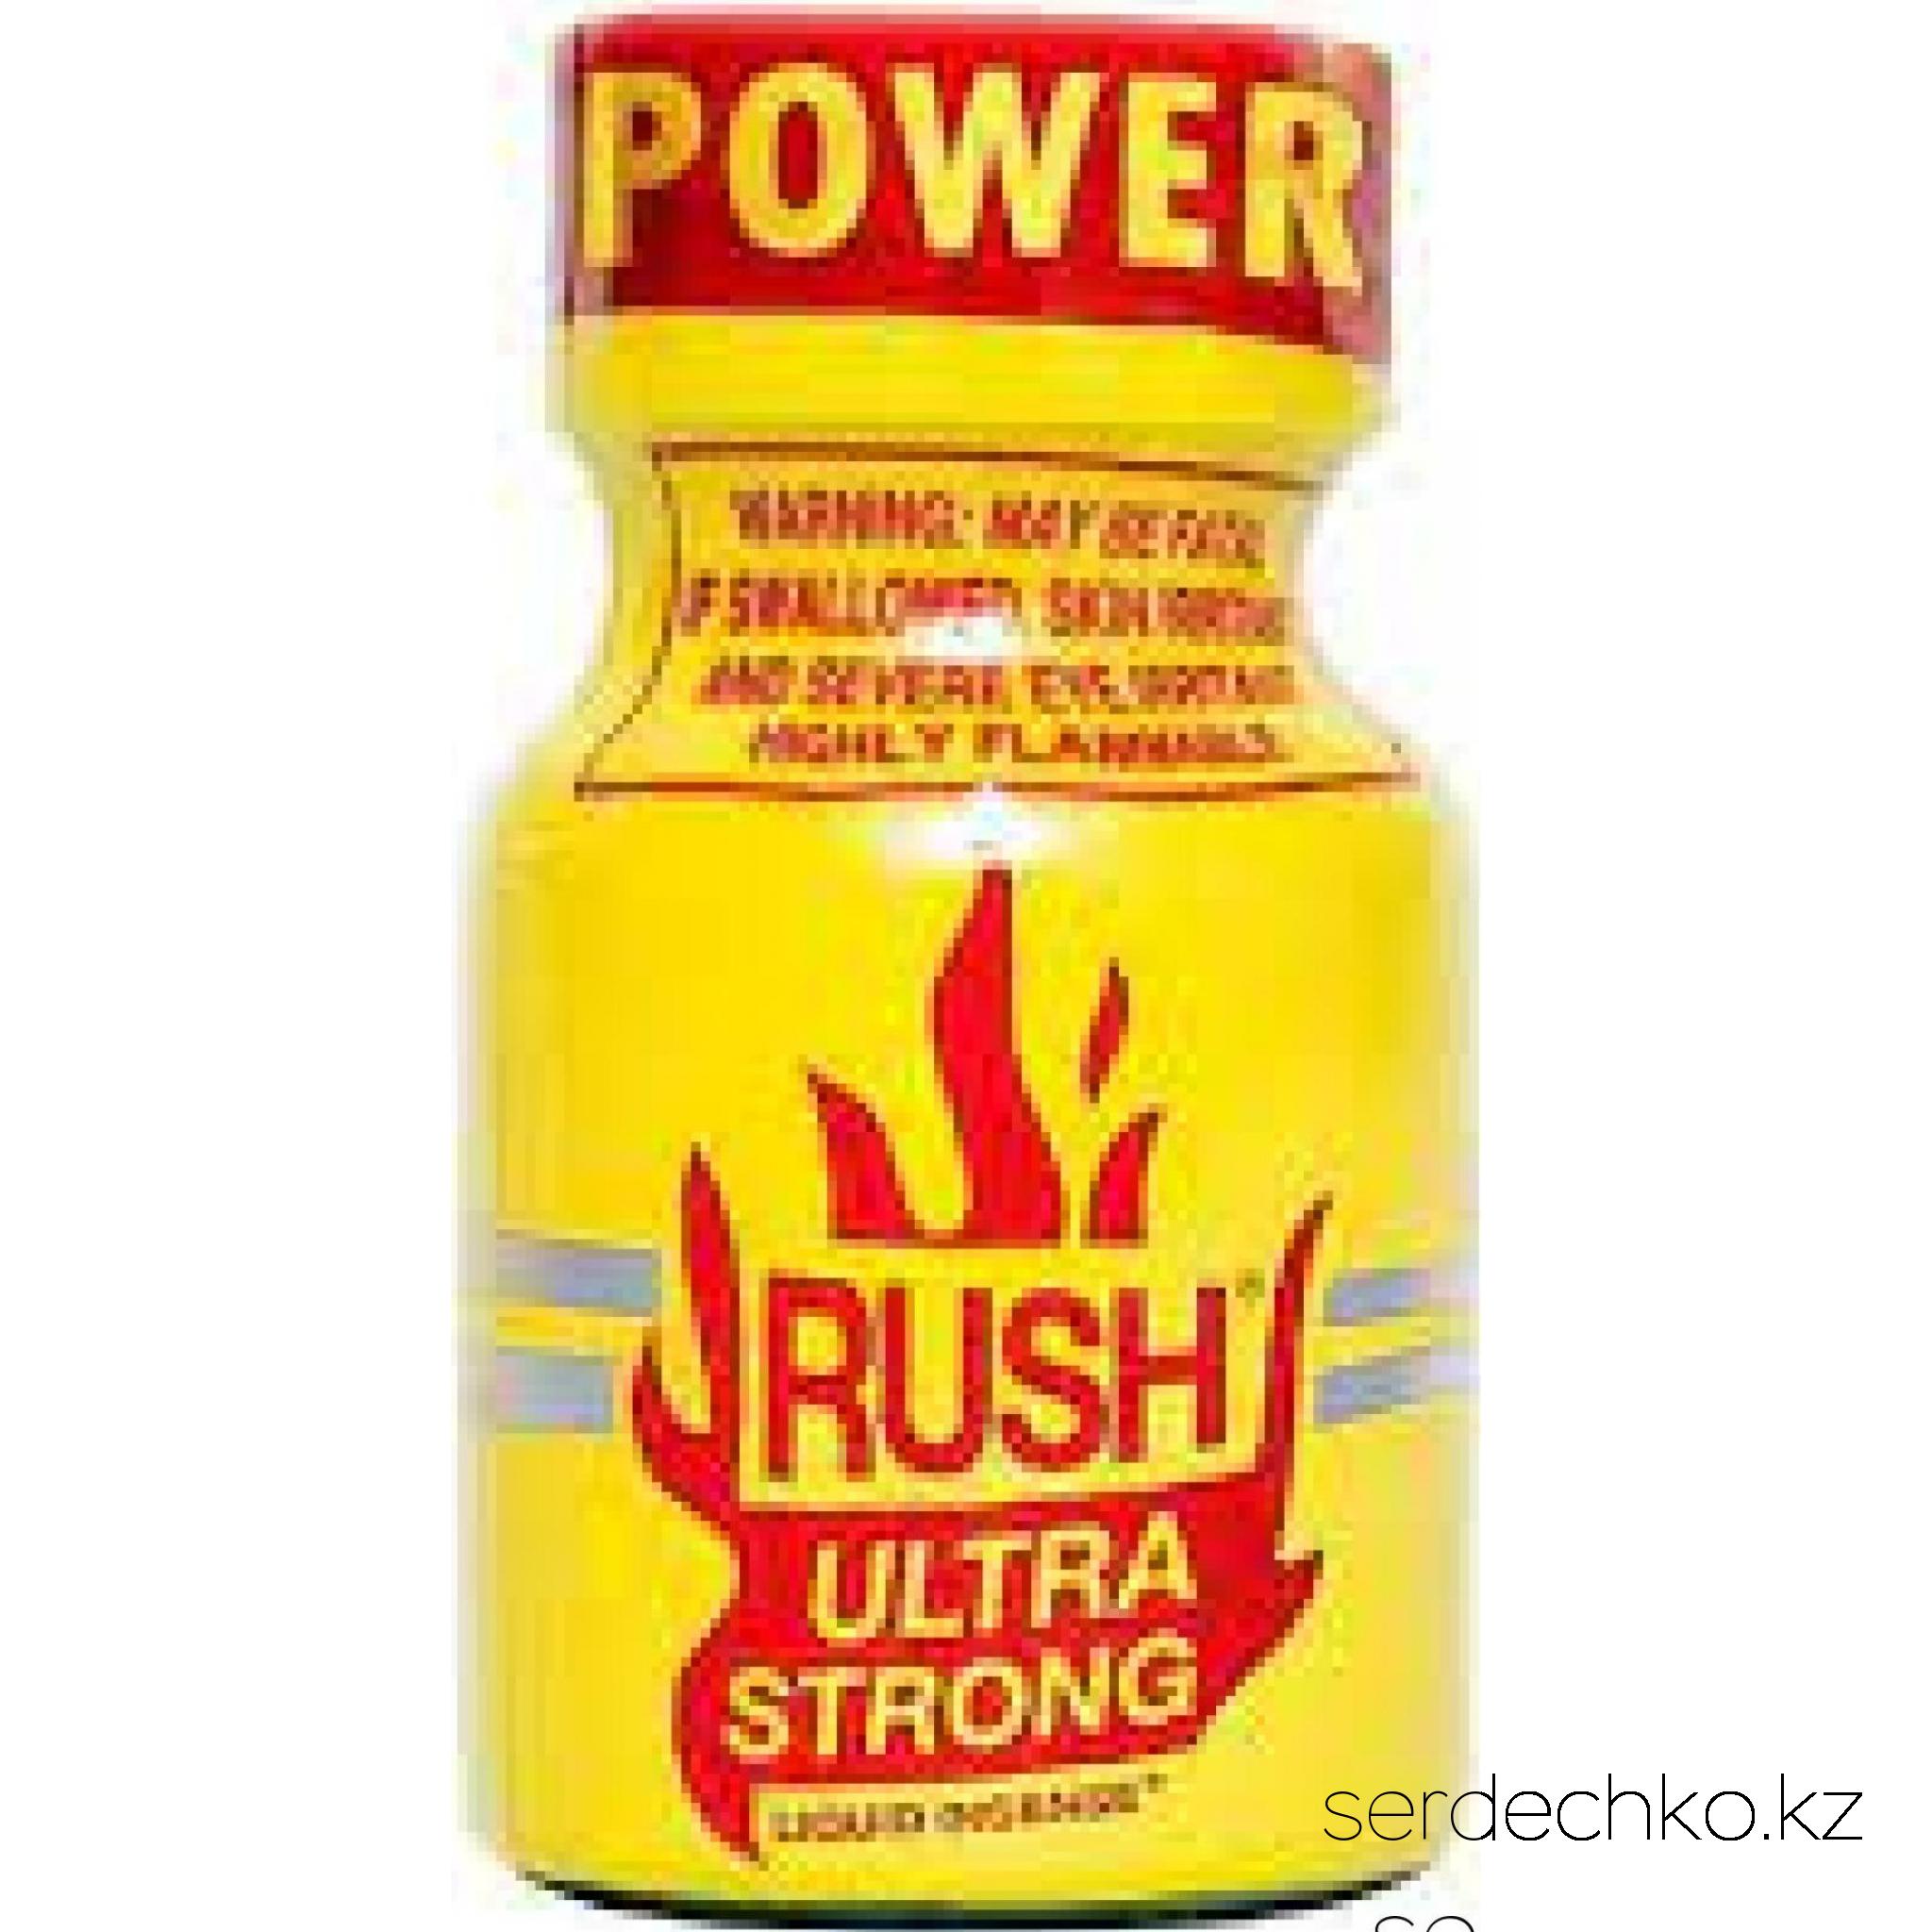 Попперс Rush Ultra Strong возбудитель,10 мл, 
	Попперс "Rush Ultra Strong"

	Попперс Rush Ultra Strong - яркий, мощный, насыщенный cамый известный попперс в мире с фантастическим действием и особенным, незабываемым ароматом! Теперь еще сильнее!

	Ароматический возбудитель прекрасно воздействует на представителей обоих полов, благодаря чему его можно использовать как для великолепного отдыха в компании, так и для создания эксклюзивной эротической атмосферы наедине с любимым человеком. Новый аромат освежит ваши эмоции и подарит истинную эйфорию при любом настроении.

	Благодаря проверенной безопасной формуле, вы сможете наслаждаться уникальными чувственными переживаниями и яркими эмоциями без каких-либо неприятных последствий. Просто позвольте себе сбросить привычные оковы и раскрыться во всех гранях своей индивидуальности. Узнайте себя настоящего!

	Преимущества:

	·        попперс усиливает тактильные ощущения;

	·        дарит чувство расслабления, успокоение и релаксацию;

	·        заряд сексуальной мощи;

	·        снимает  психическое и физическое напряжение;

	·        устраняет скованность движений;

	·        убирает психологические барьеры;

	·        в одинаковой степени приносит удовольствие и мужчинам, и женщинам.

	·        усиливает и продлевает оргазм -  действие более сильное и продолжительное.

	                                       

	Инструкция по применению:

	Поставьте открытый флакон в помещении, путем испарения летучих веществ попперса, воздух в комнате наполнится интенсивно пахнущим благоуханием. Так же можно вылить часть содержимого из флакона на блюдце для увеличения площади испарения. Действие попперса ощущается примерно через 10-15 минут после наполнения комнаты ароматом.

	
		вдыхание (носом) из бутылочки;
	
		через специальную маску-ингалятор;
	
		перелить в блюдце или оставить флакон открытым.


	Одну бутылочки на 10 мл, как правило, можно использовать до 1 месяца (применяя 3-4 раза в неделю). Одной бутылочки хватает примерно на 200 применений.

	После использования производители не рекомендуют садиться сразу же за руль автомобиля.  Следует не много подождать или выпить большое количество тёплой воды.

	Противопоказания:

	·        не принимать внутрь (НЕЛЬЗЯ!);

	·        не применять попперсы людям страдающим сердечно-сосудистой недостаточностью, гипертонией, анемией, глаукомой;

	·         не принимать с другими секс-стимуляторами, такими как циалис, виагра и другие стимуляторы для мужчин;

	·        не принимать беременным, кормящим;

	·        не принимать лицам до 18лет;

	·        не  наносить попперсы на участки кожи или слизистую оболочку, из-за опасности ожогов;

	·        не оставлять под прямыми солнечными лучами;

	·        не нагревать (то есть беречь от контакта со спичками, зажигалками, горящей сигаретой и тому подобное), т.к. содержат легковоспламеняющиеся вещества.

	Условия хранения:

	Попперс должен хранится при особых условиях. Прохладное темное место, такое как холодильник, обеспечит ему сохранность до 5 лет, при вскрытой бутылочке препарат продержится несколько недель. Температура должна быть в пределах +3°C. Закрытым и открытым баночкам необходимо обеспечить одинаковое условие хранения, поэтому стоит их хранить вместе. Если вы хотите воспользоваться попперсом и только вынули его их холодильника, то не спешите открывать, чтобы не возник конденсат на стенках флакона, он должен согреться до комнатной температуры (не нагревать самостоятельно).

	Объём: 10 мл.
